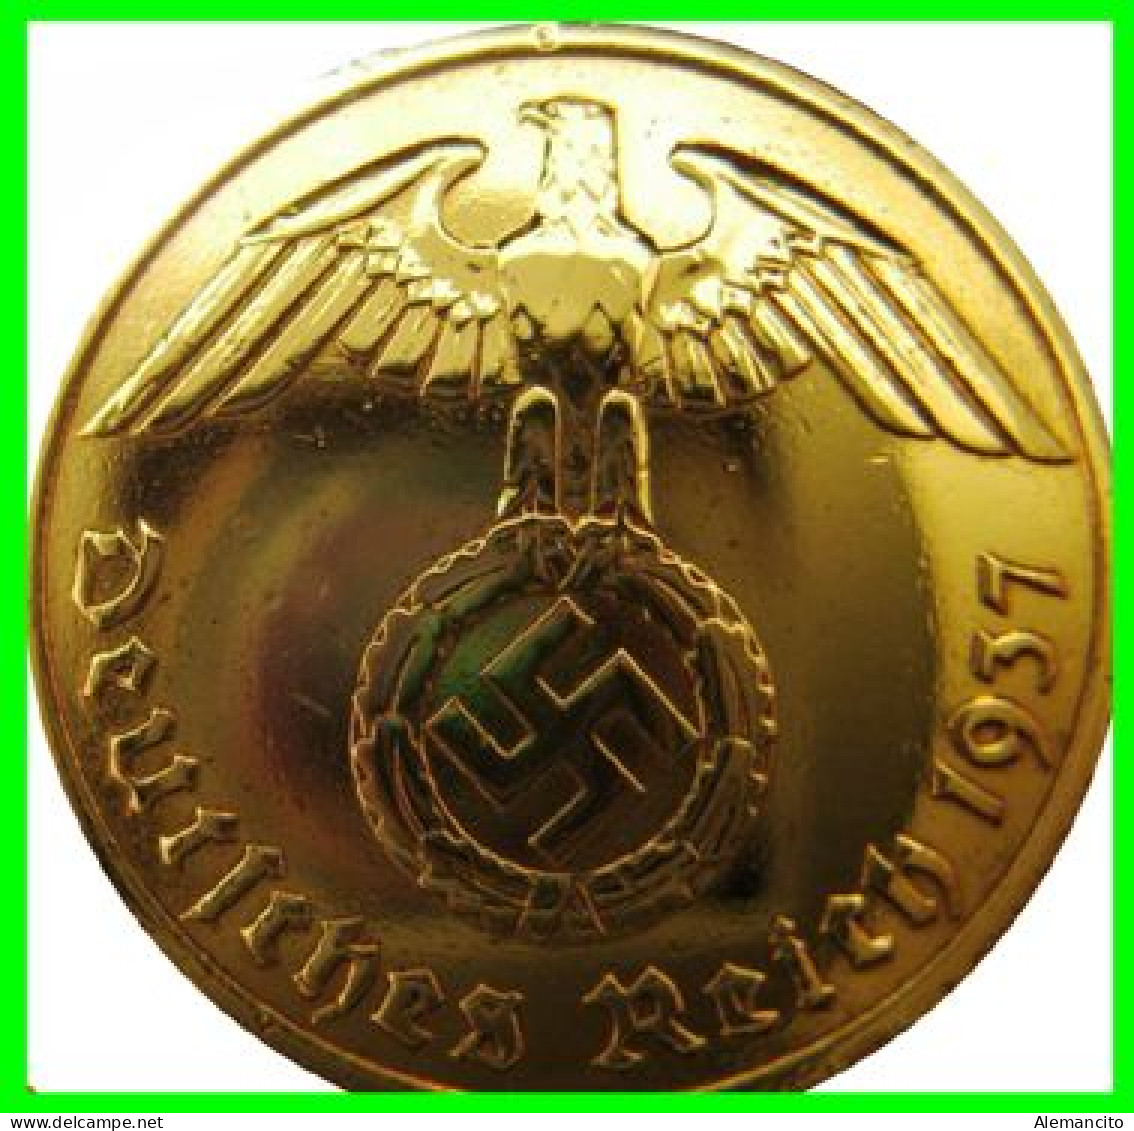 GERMANY - ALEMANIA DEUTFCHES REICH MONEDA DE 0.10 REICHSPFENNIG AÑO 1937 – CECA-A - KM 92  - BRONCE - ESTRIADA - 10 Reichspfennig